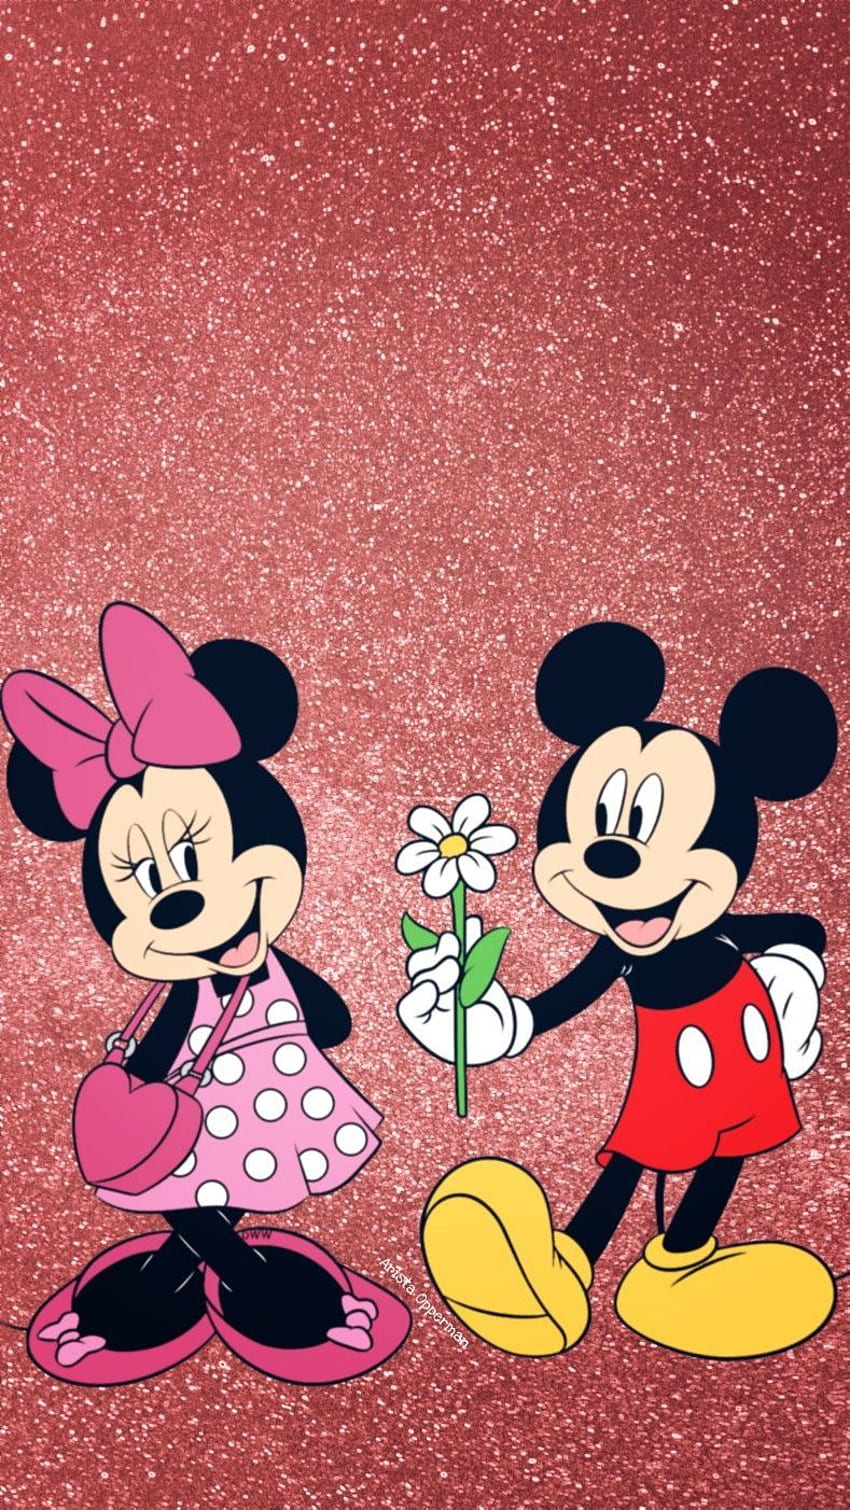 Mickey Mouse và Minnie Mouse: Hai nhân vật lém lỉnh và đầy tình yêu, Mickey Mouse và Minnie Mouse luôn là cặp đôi được nhiều người yêu thích. Bức ảnh về hai nhân vật này sẽ khiến bạn cảm thấy ấm lòng và vui vẻ. Hãy tạo cho mình một không gian đầy yêu thương với bức ảnh đáng yêu này!